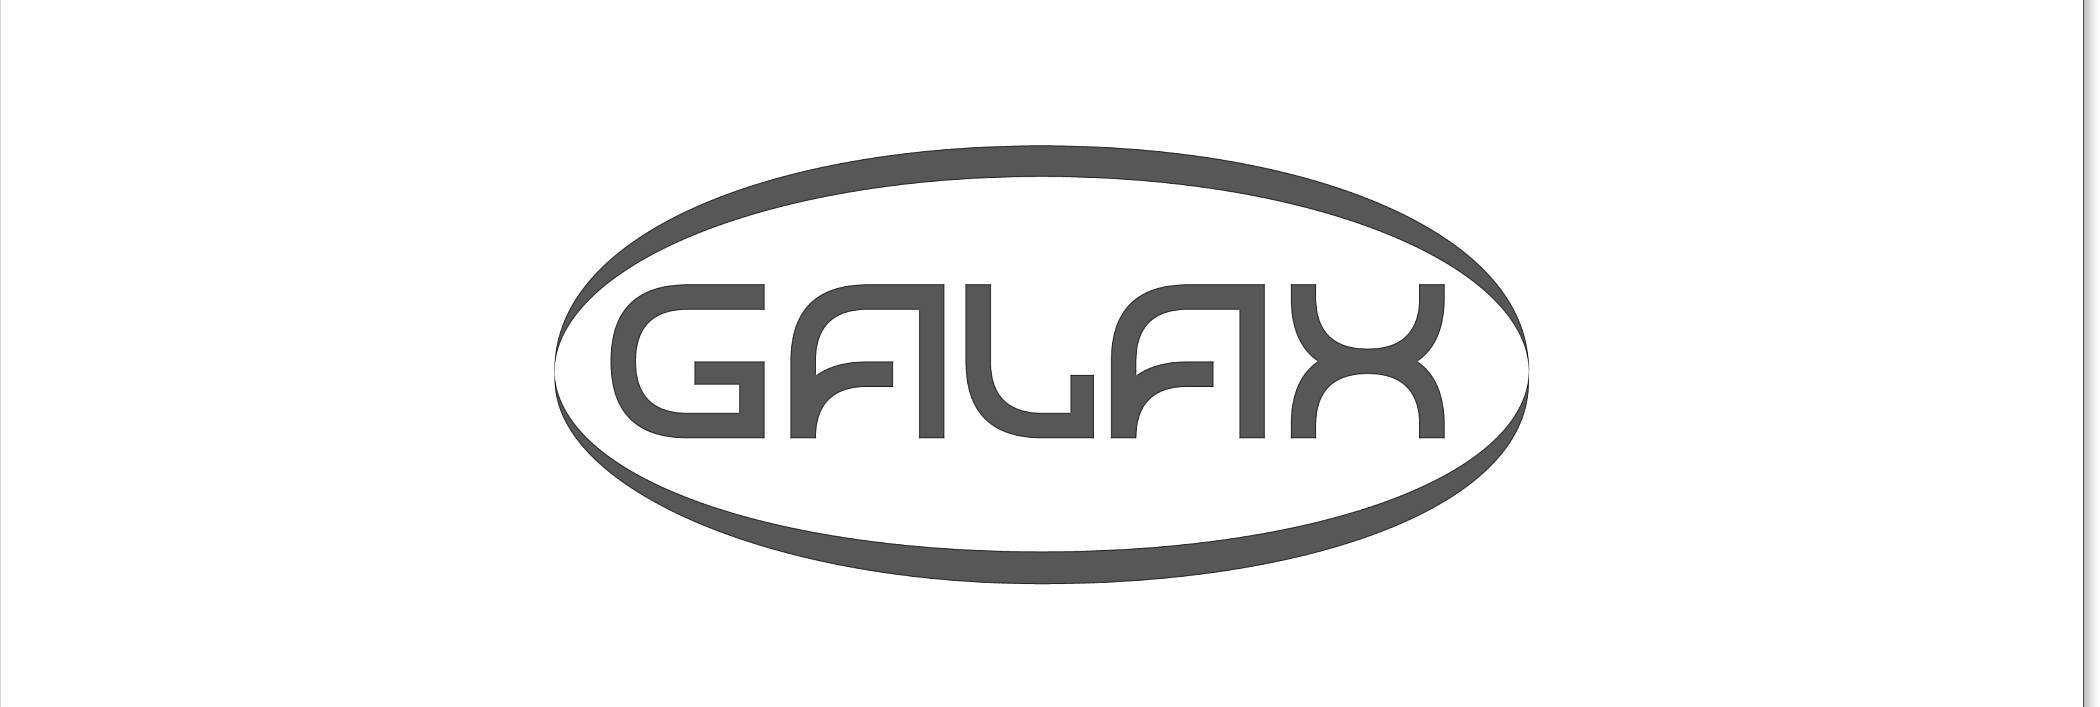 GALAX